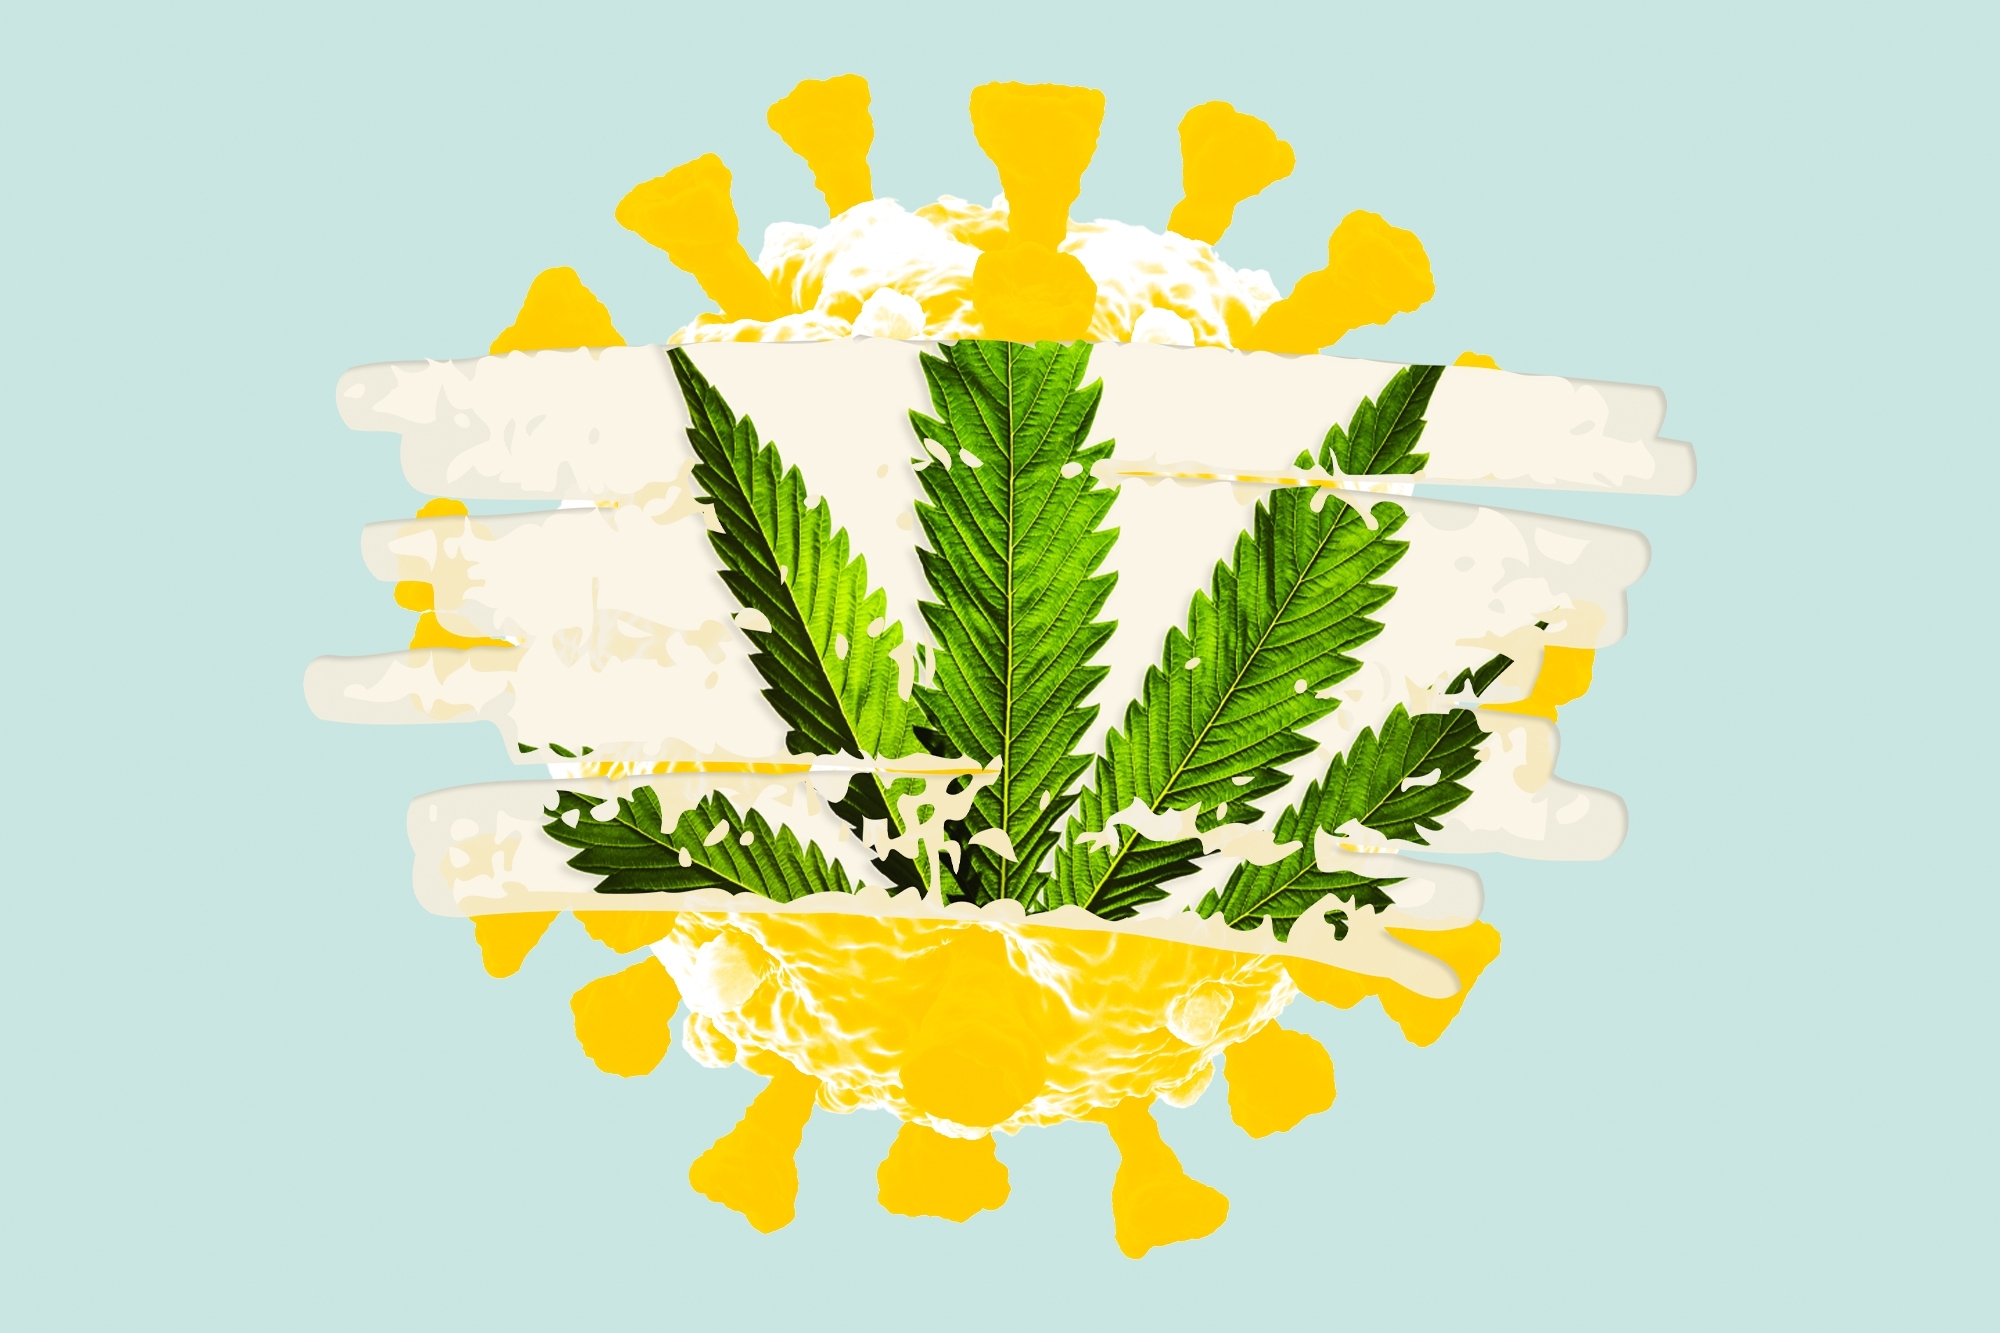 Badania Nad Wykorzystaniem Marihuany w Walce z Koronawirusem, jamaica.com.pl